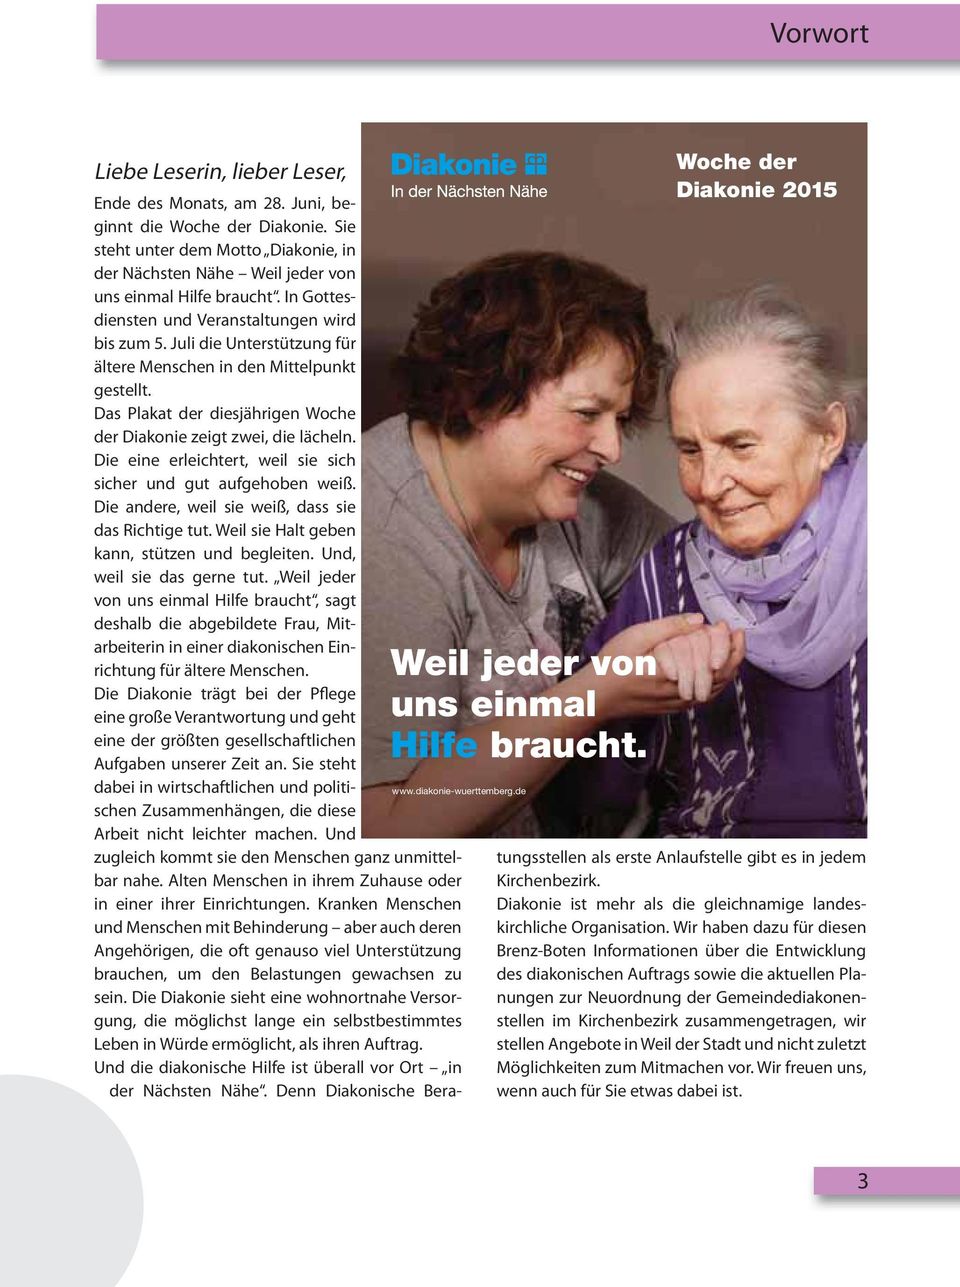 Juli die Unterstützung für ältere Menschen in den Mittelpunkt gestellt. Das Plakat der diesjährigen Woche der Diakonie zeigt zwei, die lächeln.